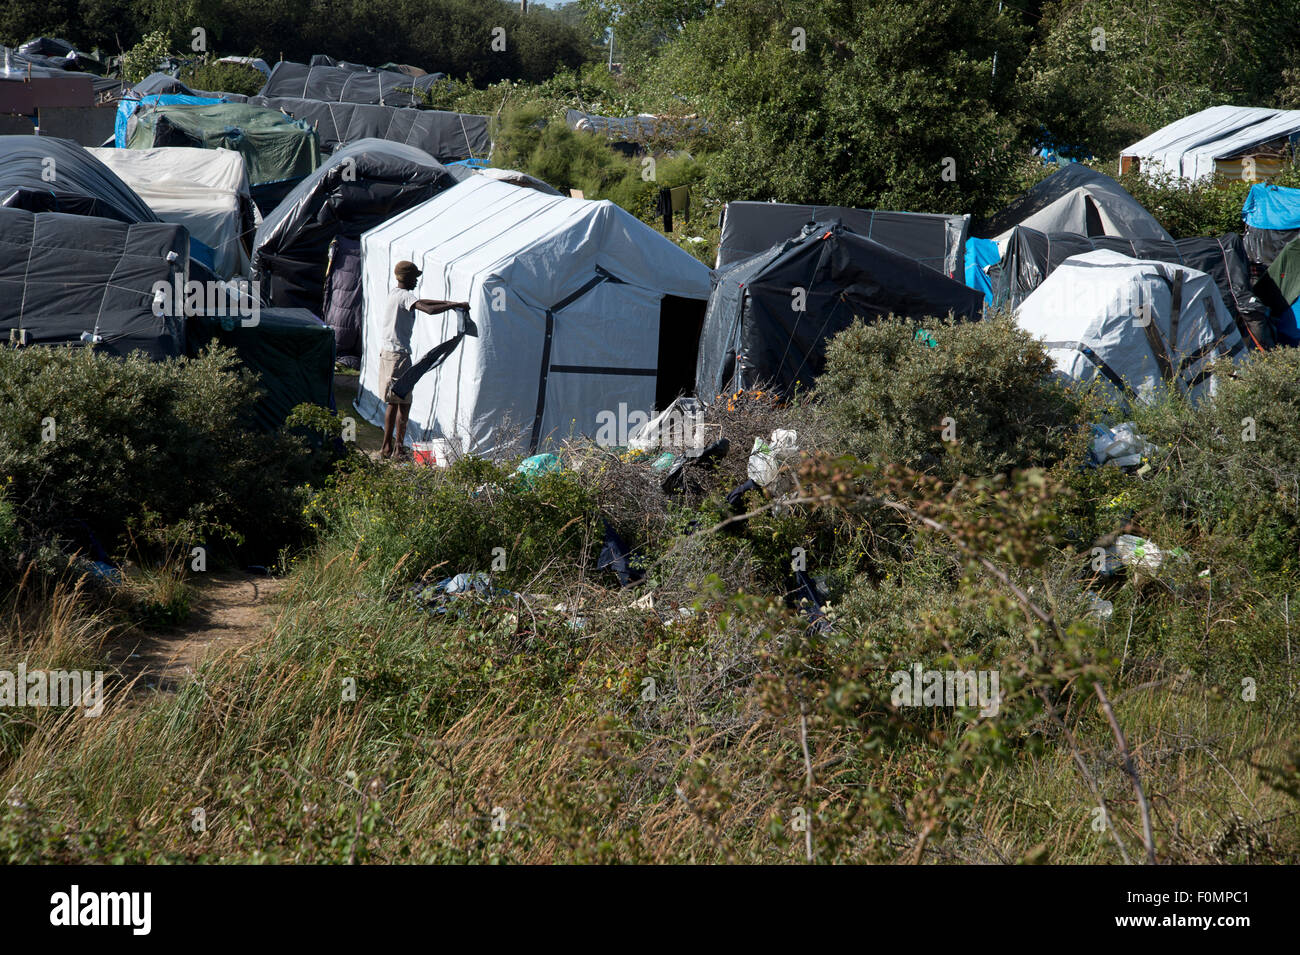 Migration Calais.The Dschungel-Camp. Ein Mann ringt, seine Kleidung nach dem Waschen sie vor einigen provisorischen Hütten. Stockfoto